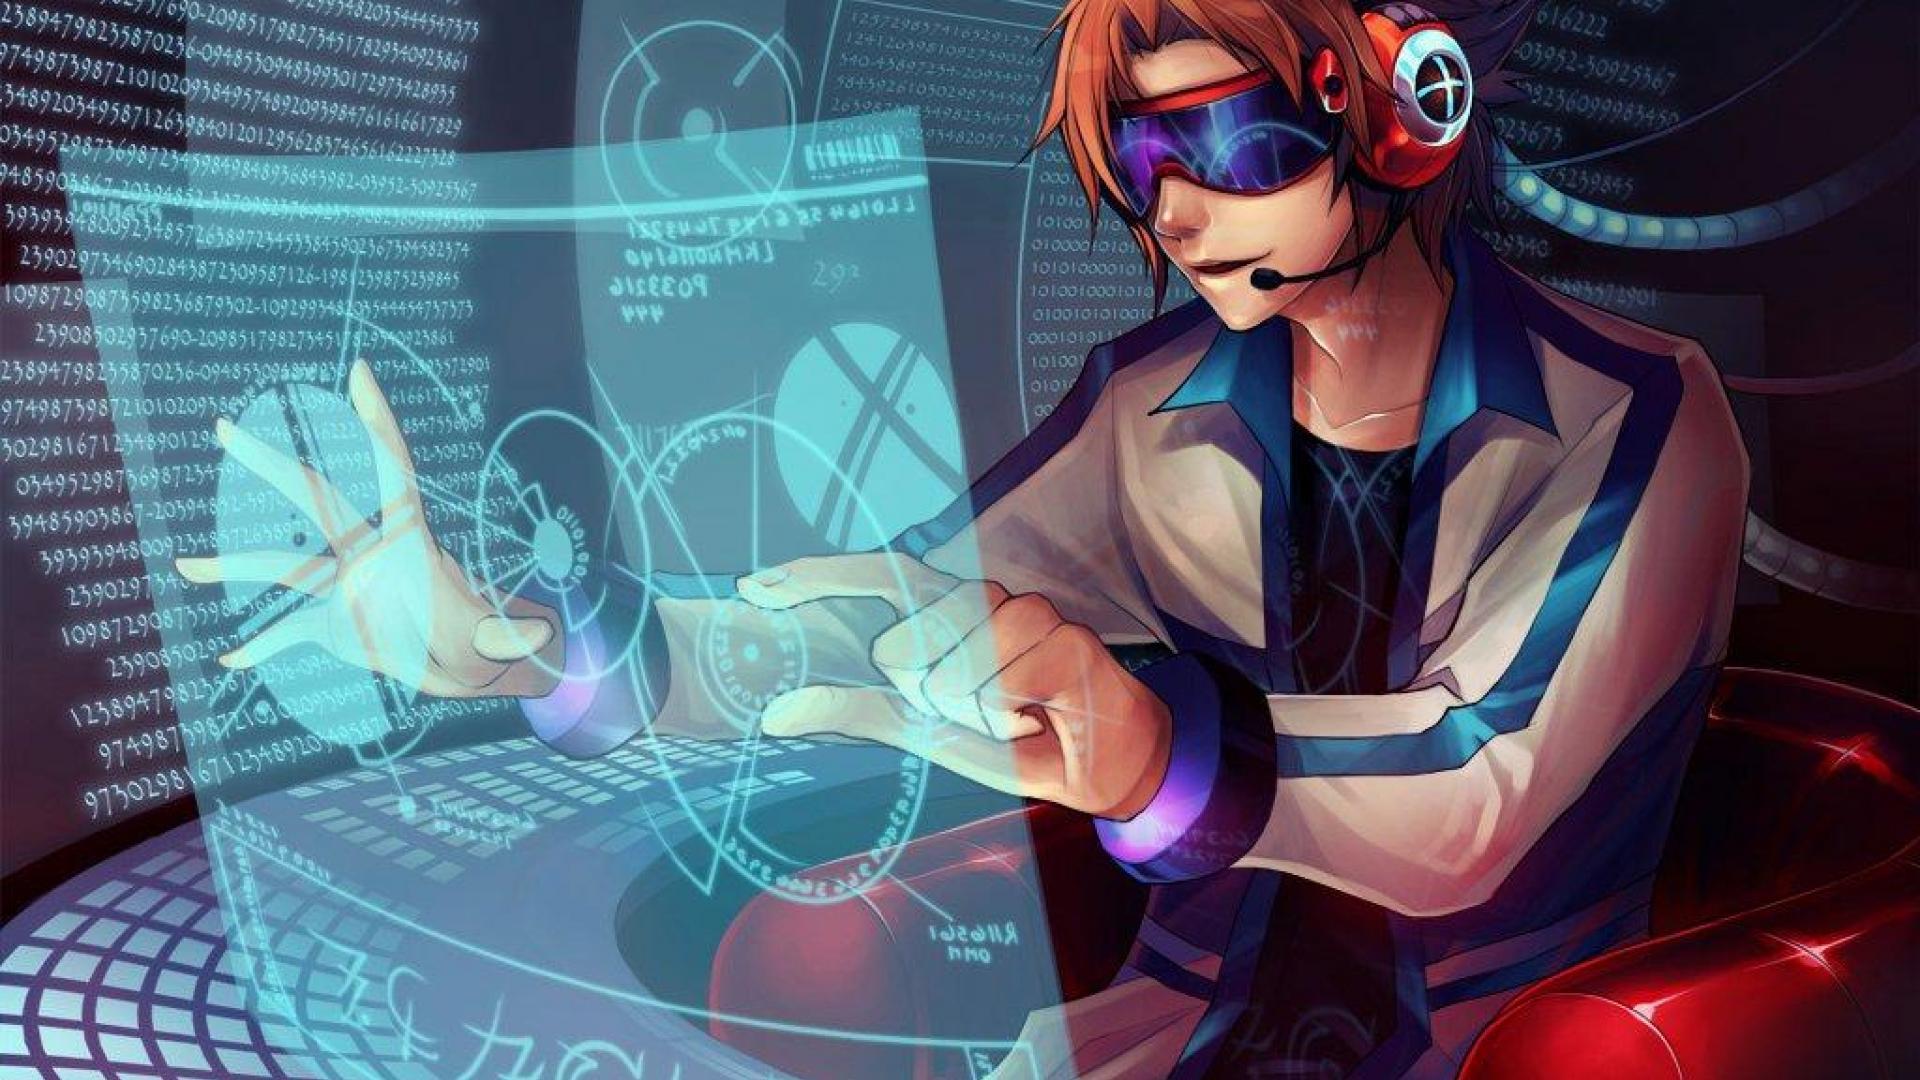 Anime Hacker Wallpapers sẽ mang đến cho bạn những hình ảnh tuyệt đẹp và ma mị về thế giới của các hacker chuyên nghiệp. Những hình nền này sẽ giúp bạn thăng hoa trong sự sáng tạo và tạo ra một không gian làm việc thú vị và độc đáo.